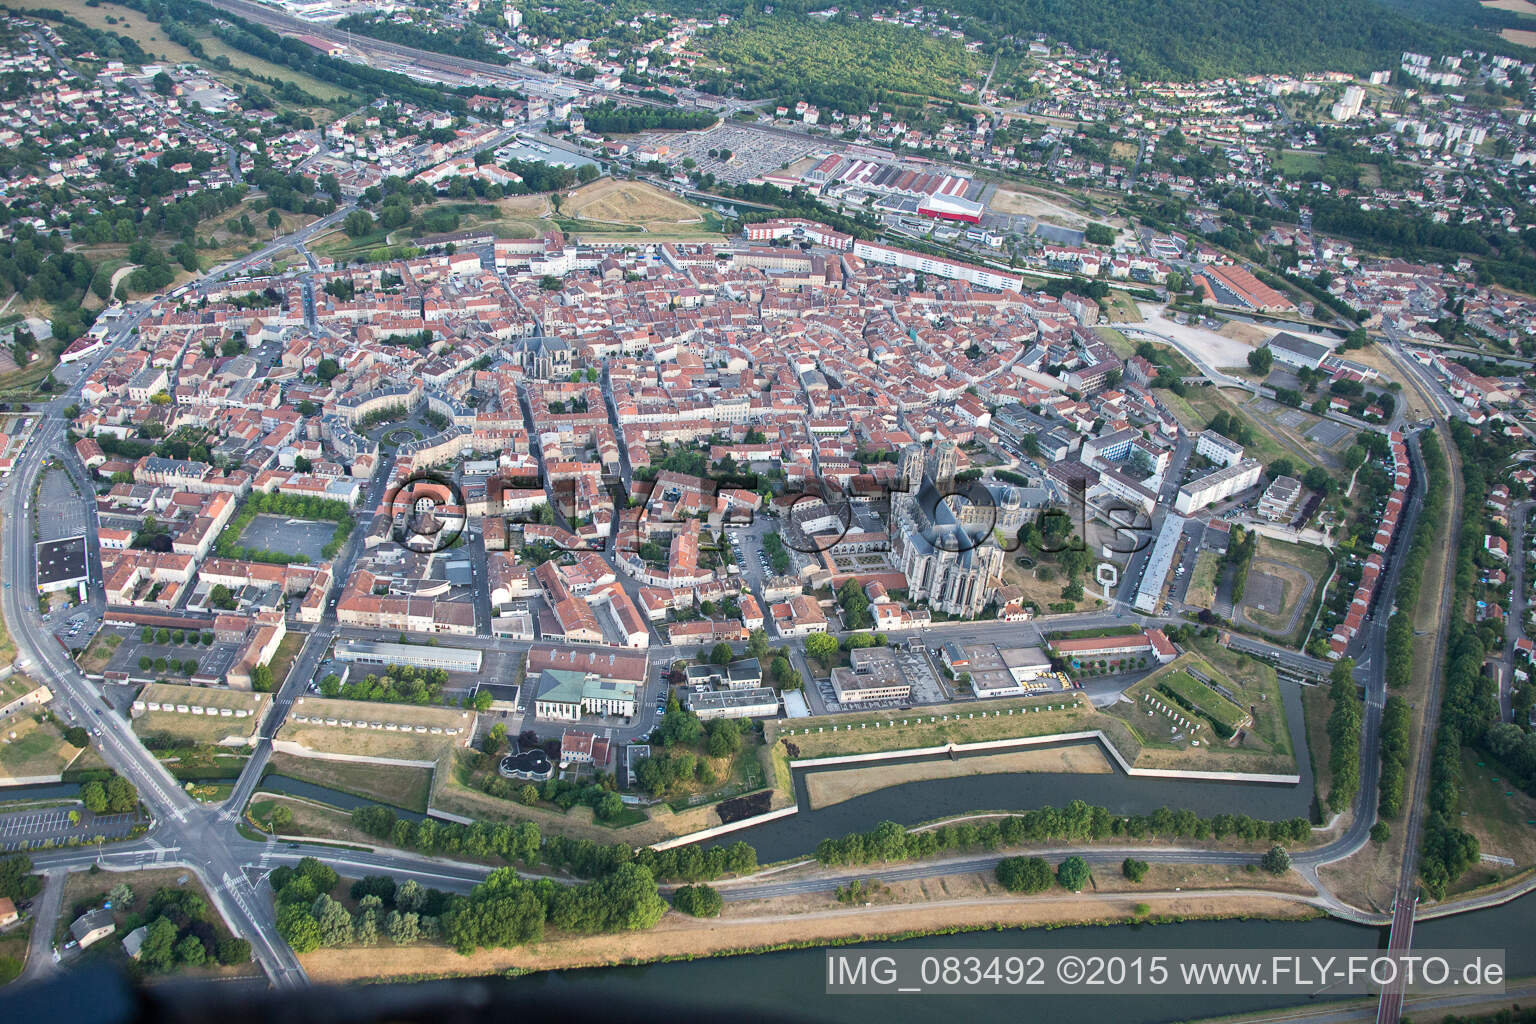 Toul im Bundesland Meurthe-et-Moselle, Frankreich von einer Drohne aus